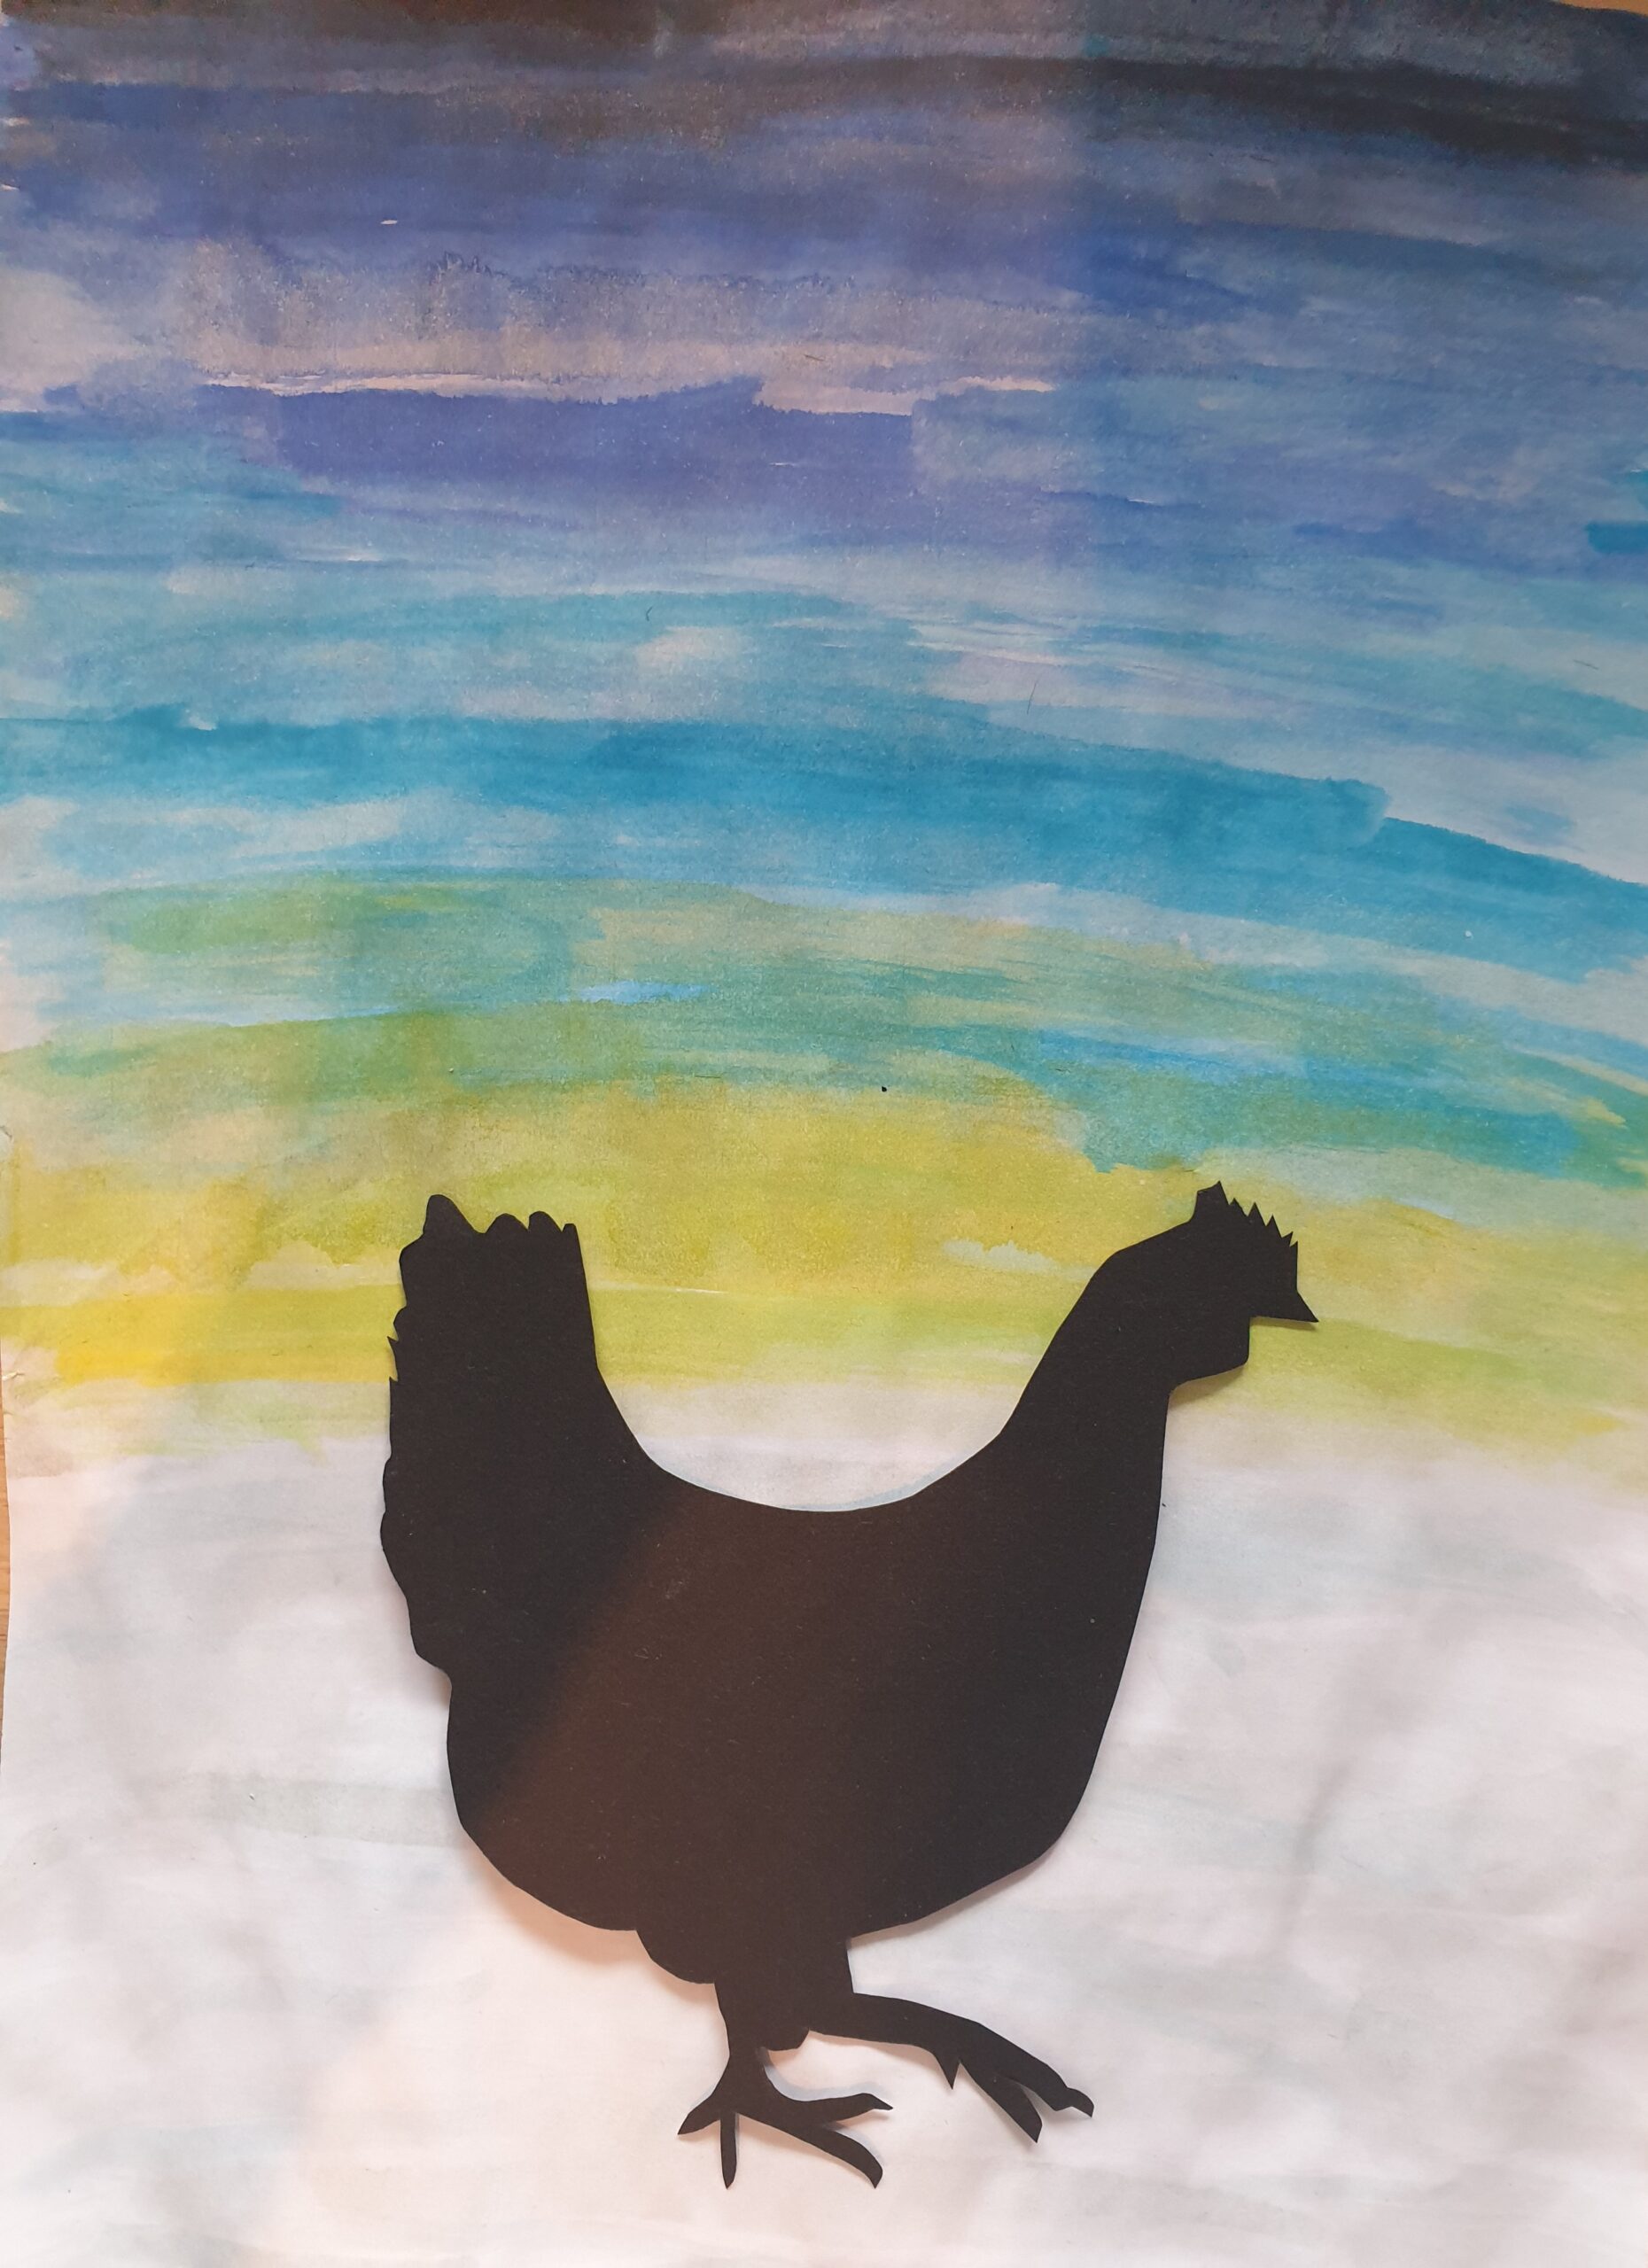 schwarzes Huhn auf Wasserfarbenbild. Himmel in Blautönen und Schnee